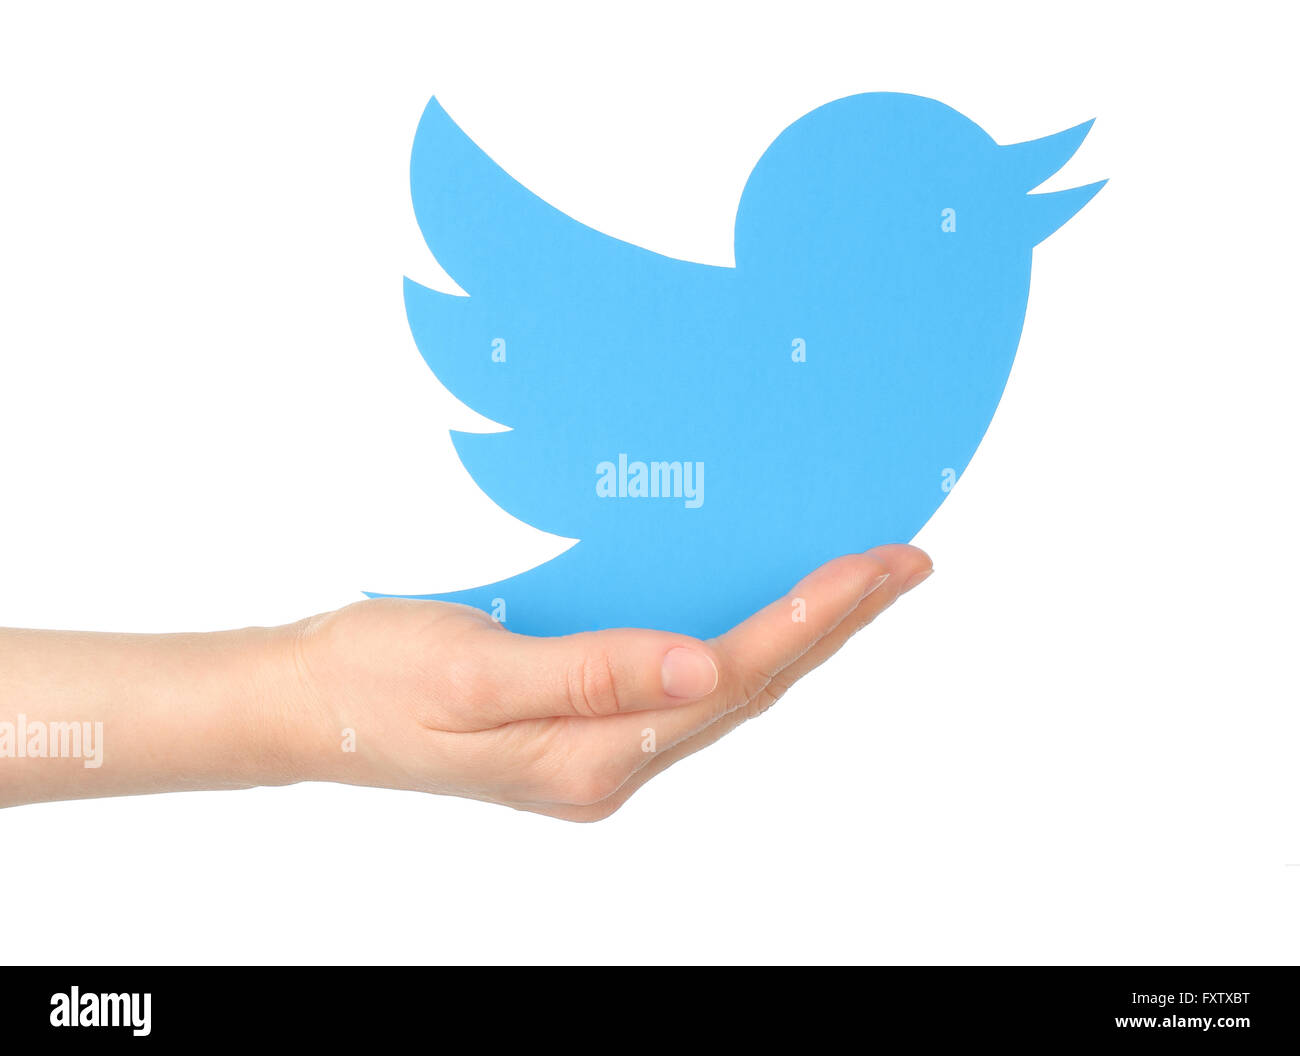 Kiev, Ucraina - 15 Gennaio 2016: mano trattiene logotipo twitter bird stampato su carta. Twitter è un servizio online di social networking serv Foto Stock